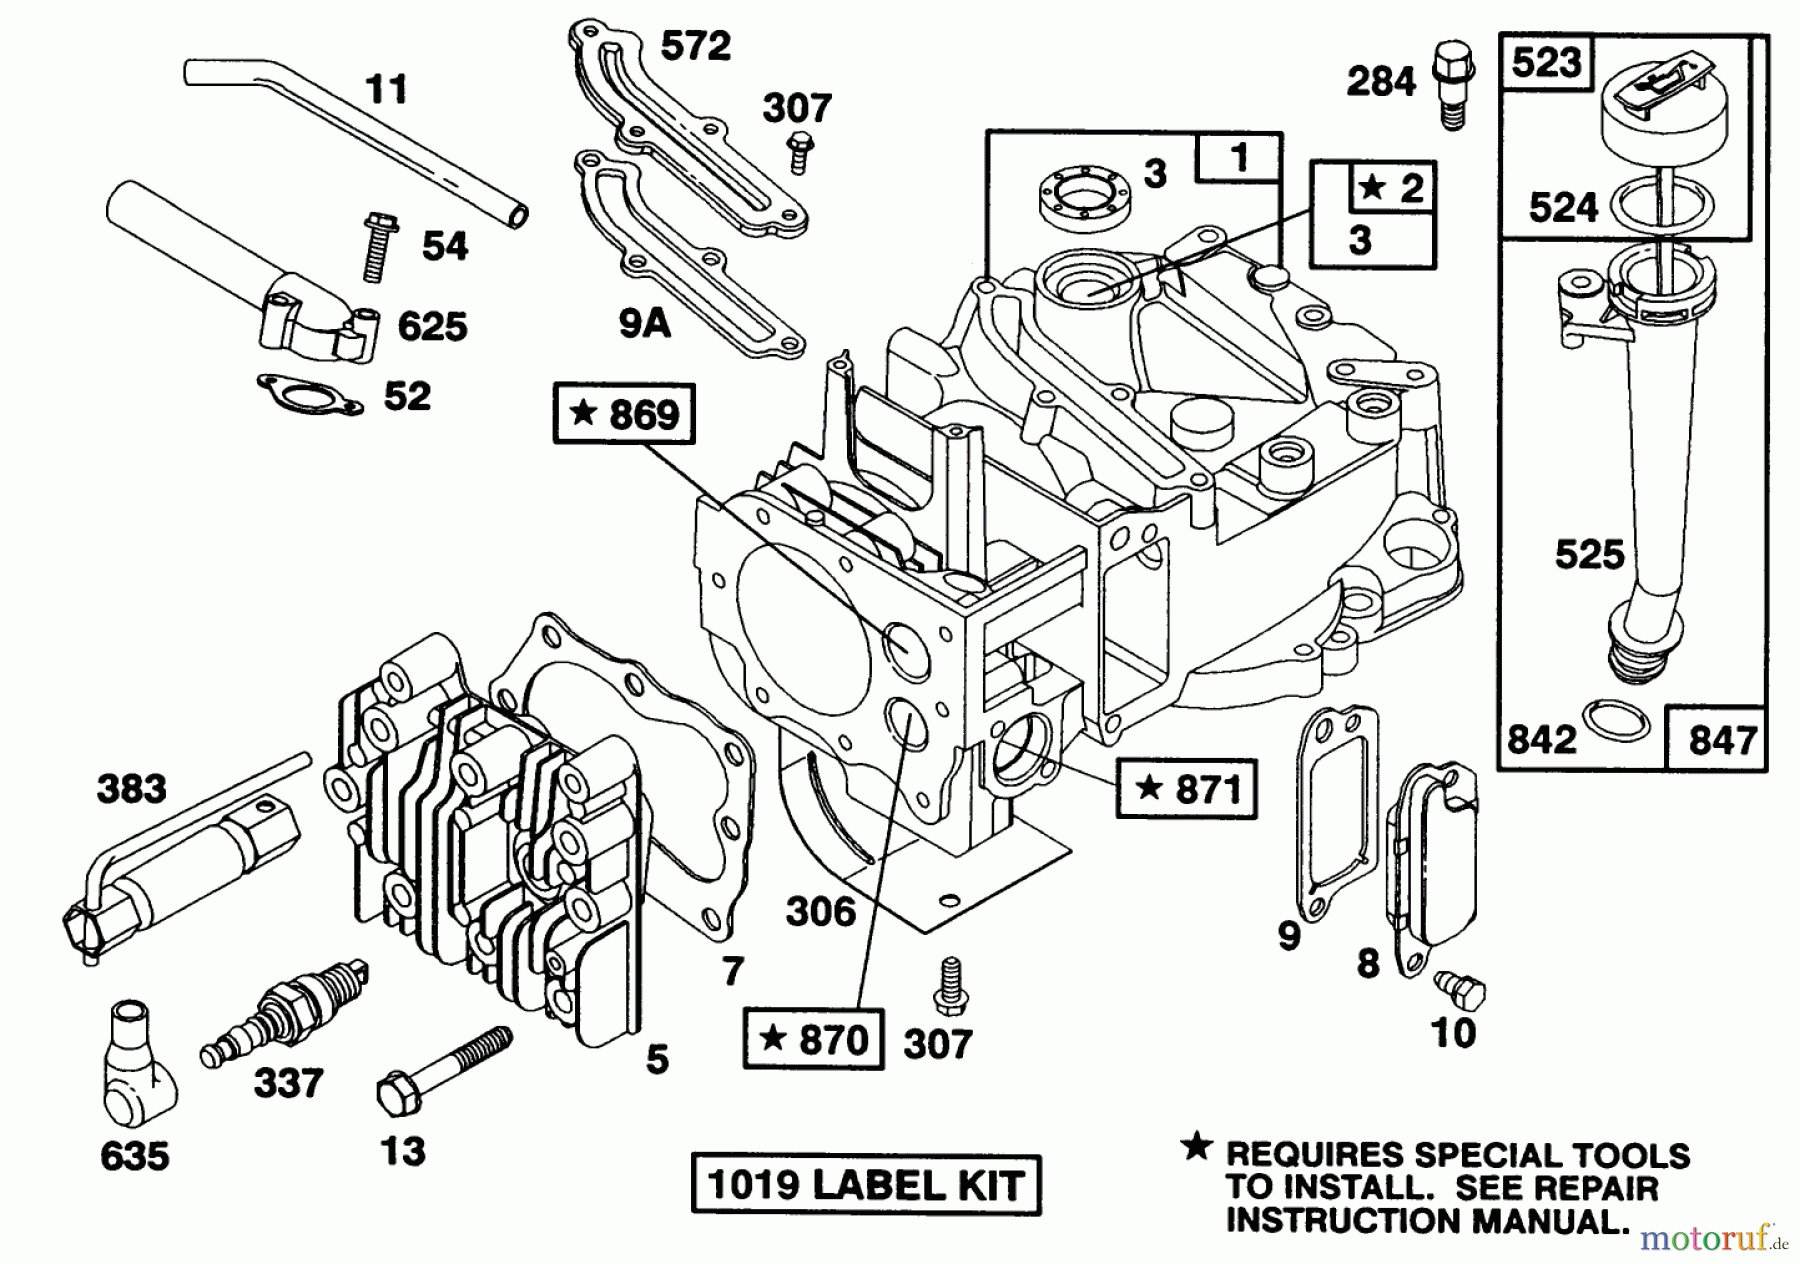  Toro Neu Mowers, Walk-Behind Seite 1 20322 - Toro Lawnmower, 1992 (2000001-2999999) ENGINE BRIGGS & STRATTON MODEL 124707-3185-01 #1